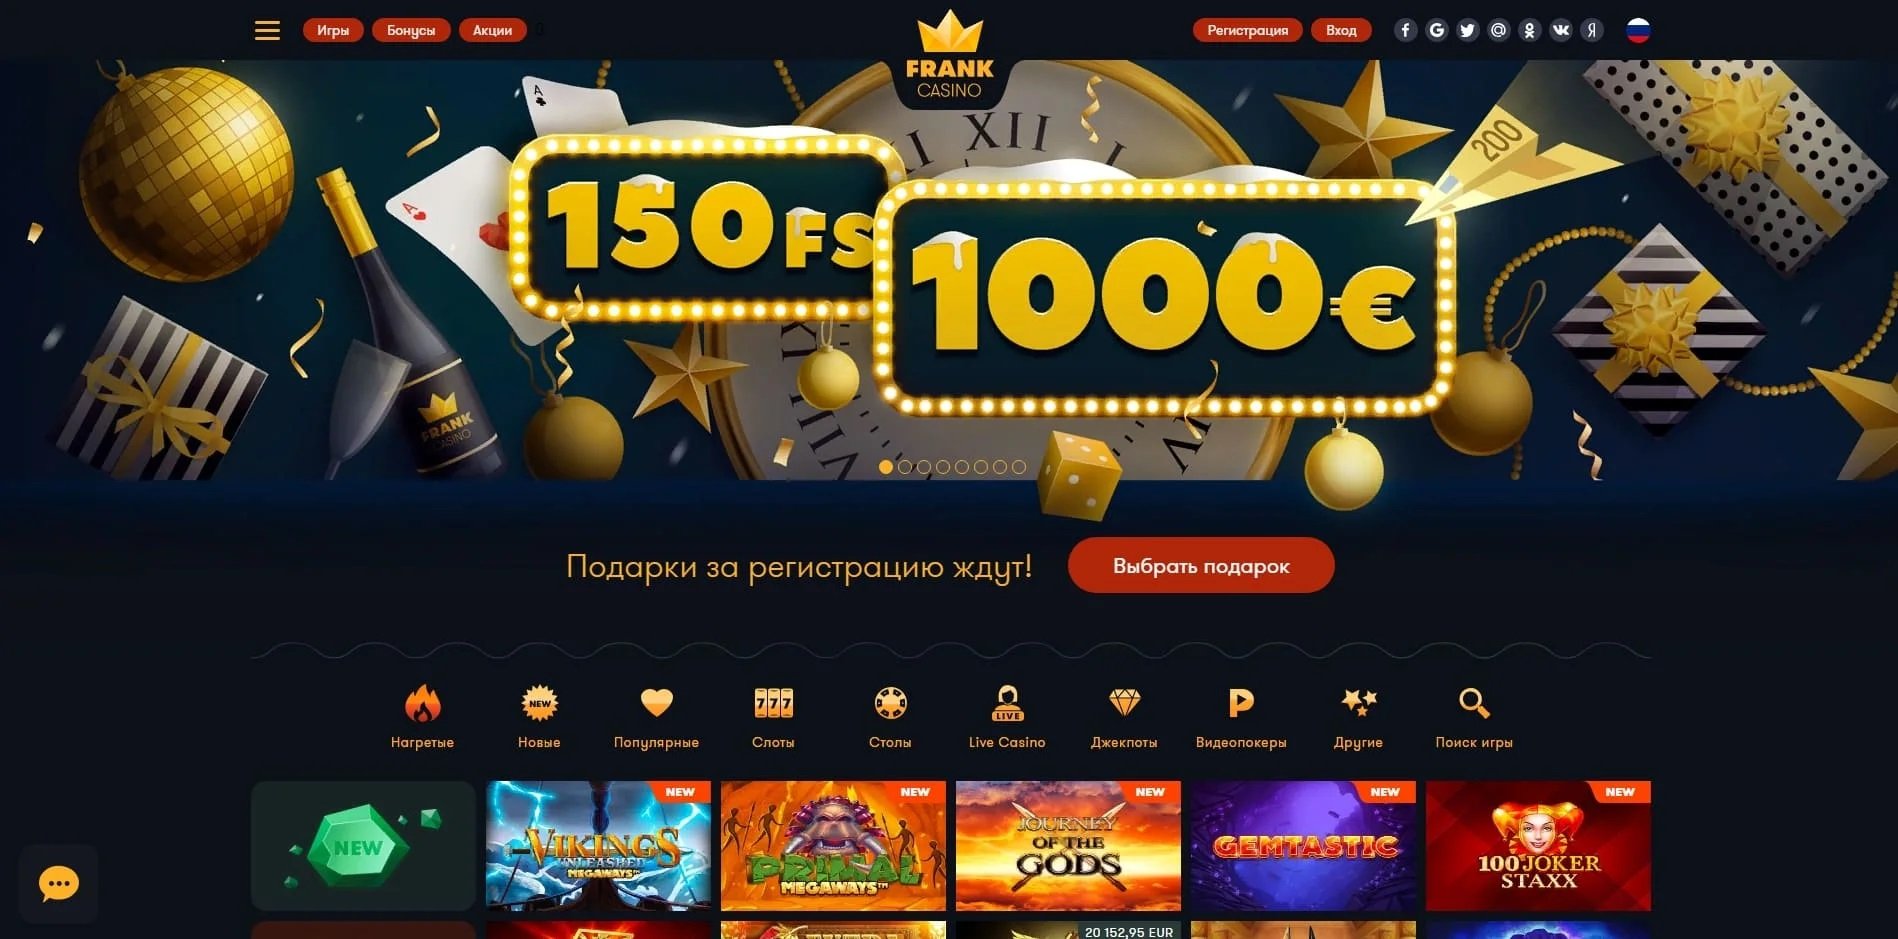 Franker date casino эльдорадо казино онлайн официальный мобильная версия